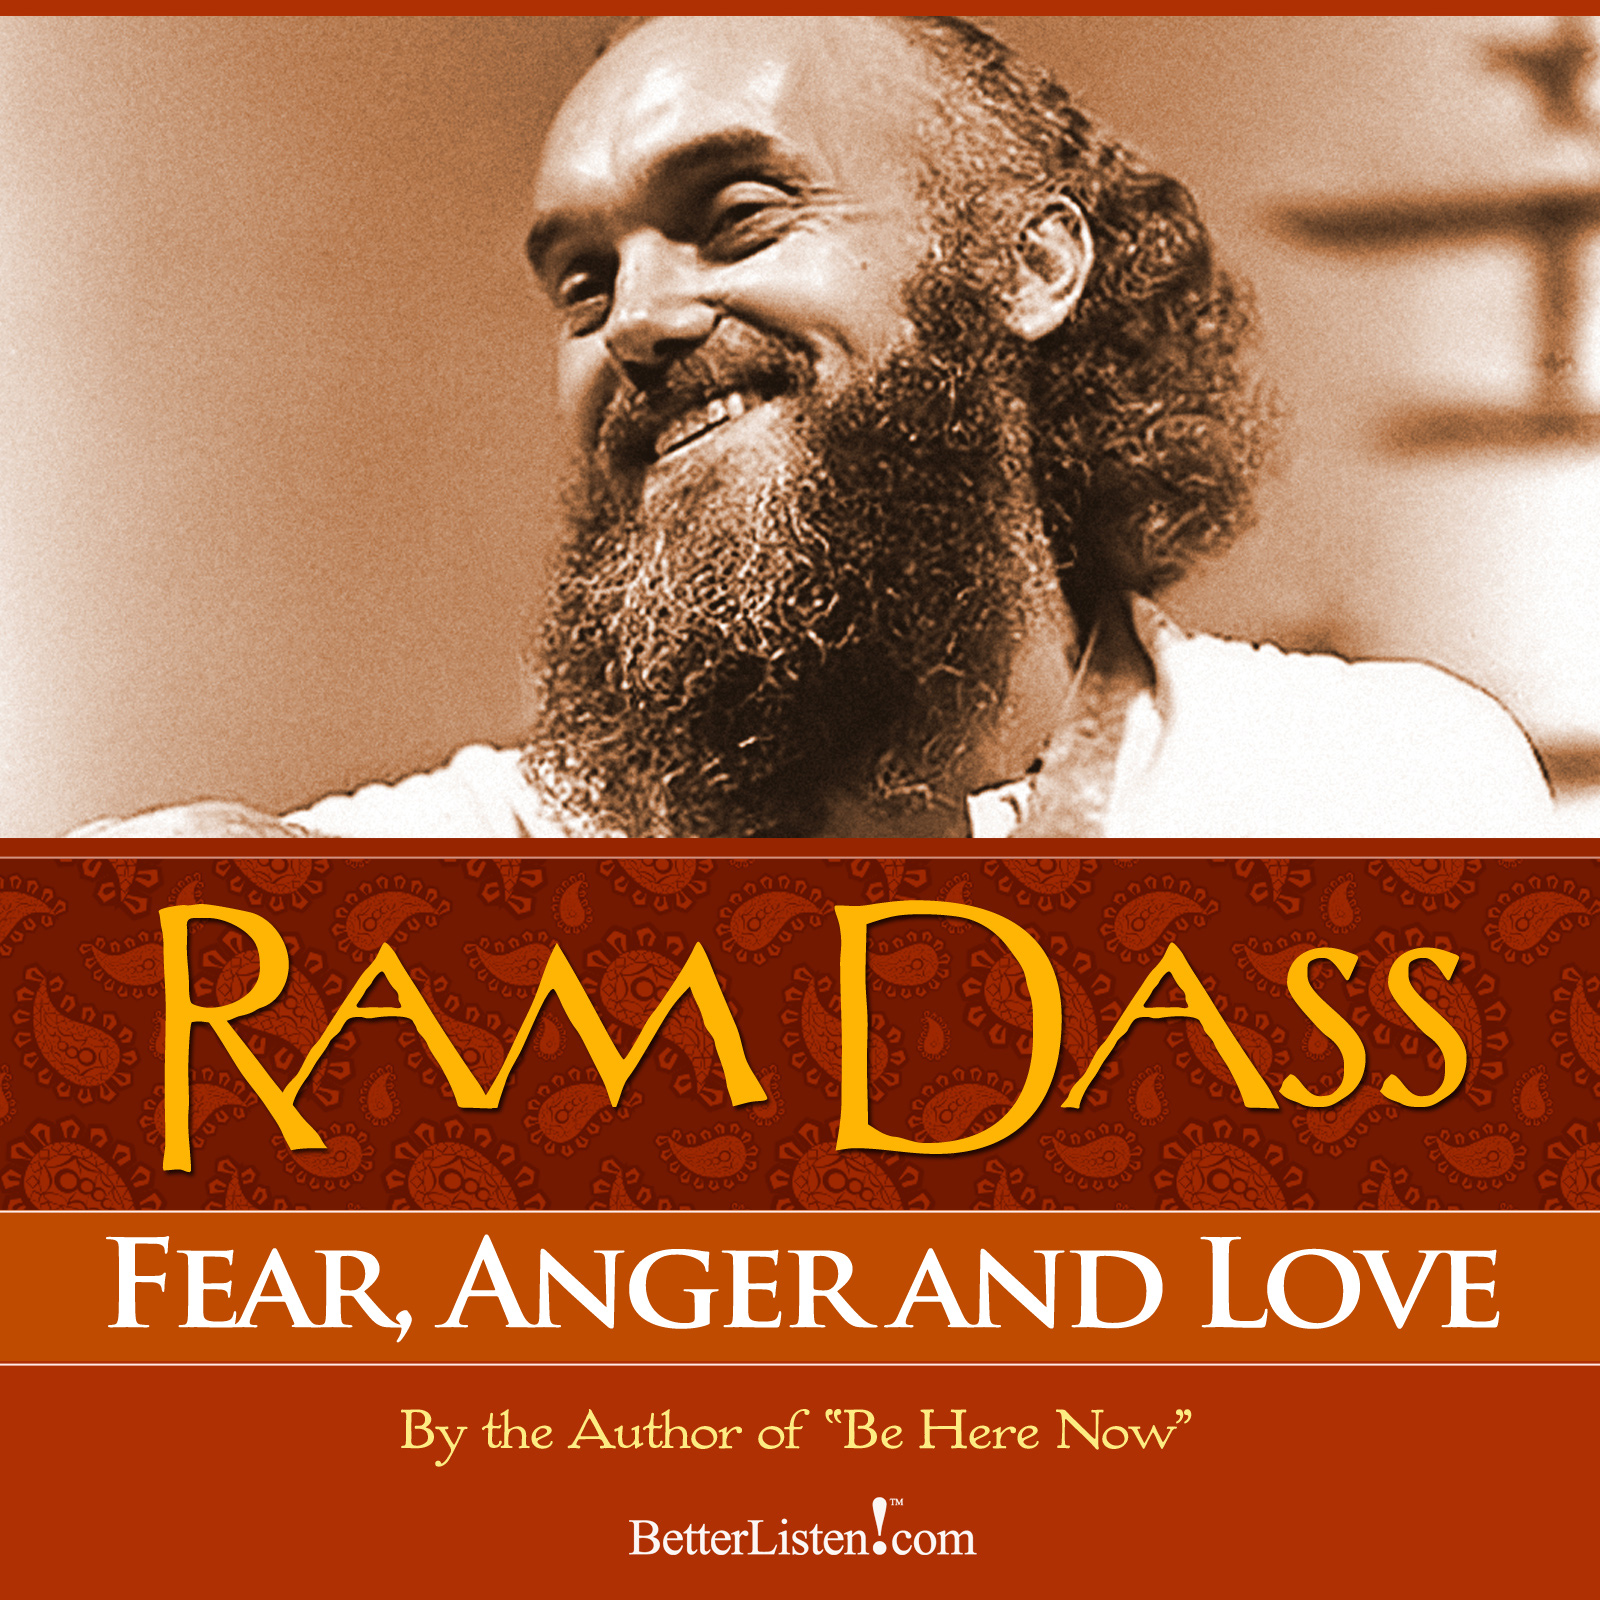 Fear, Anger and Love with Ram Dass Audio Program BetterListen! - BetterListen!